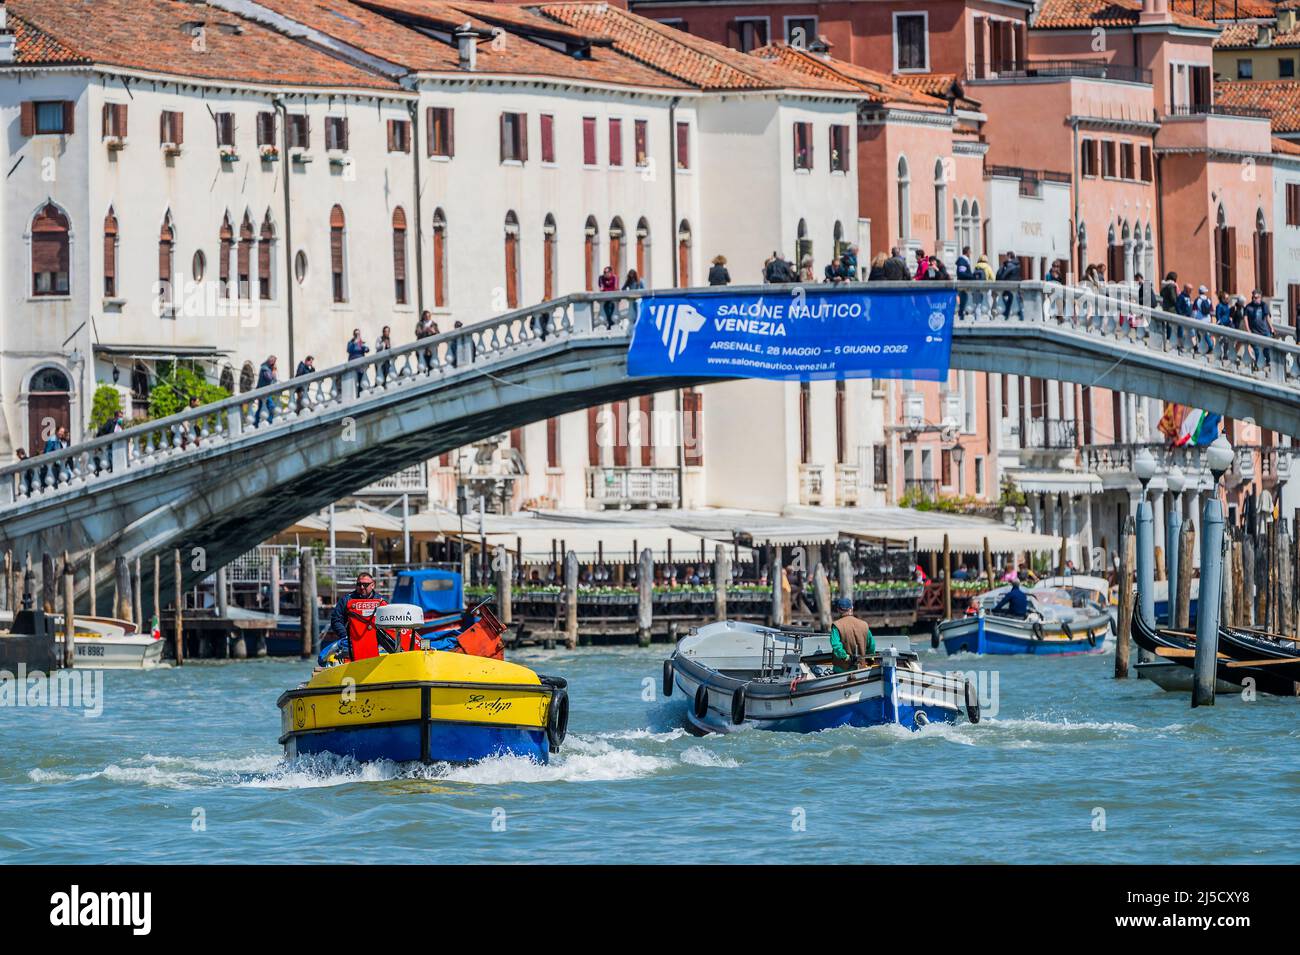 Les bateaux de travail transportent des déchets (dans les couleurs ukraniennes) et des marchandises sur le Grand Canal - les canaux sont les principales artères portant toutes les formes de transport d'eau - Venise au début de la Biennale di Venezia en 2022. Banque D'Images